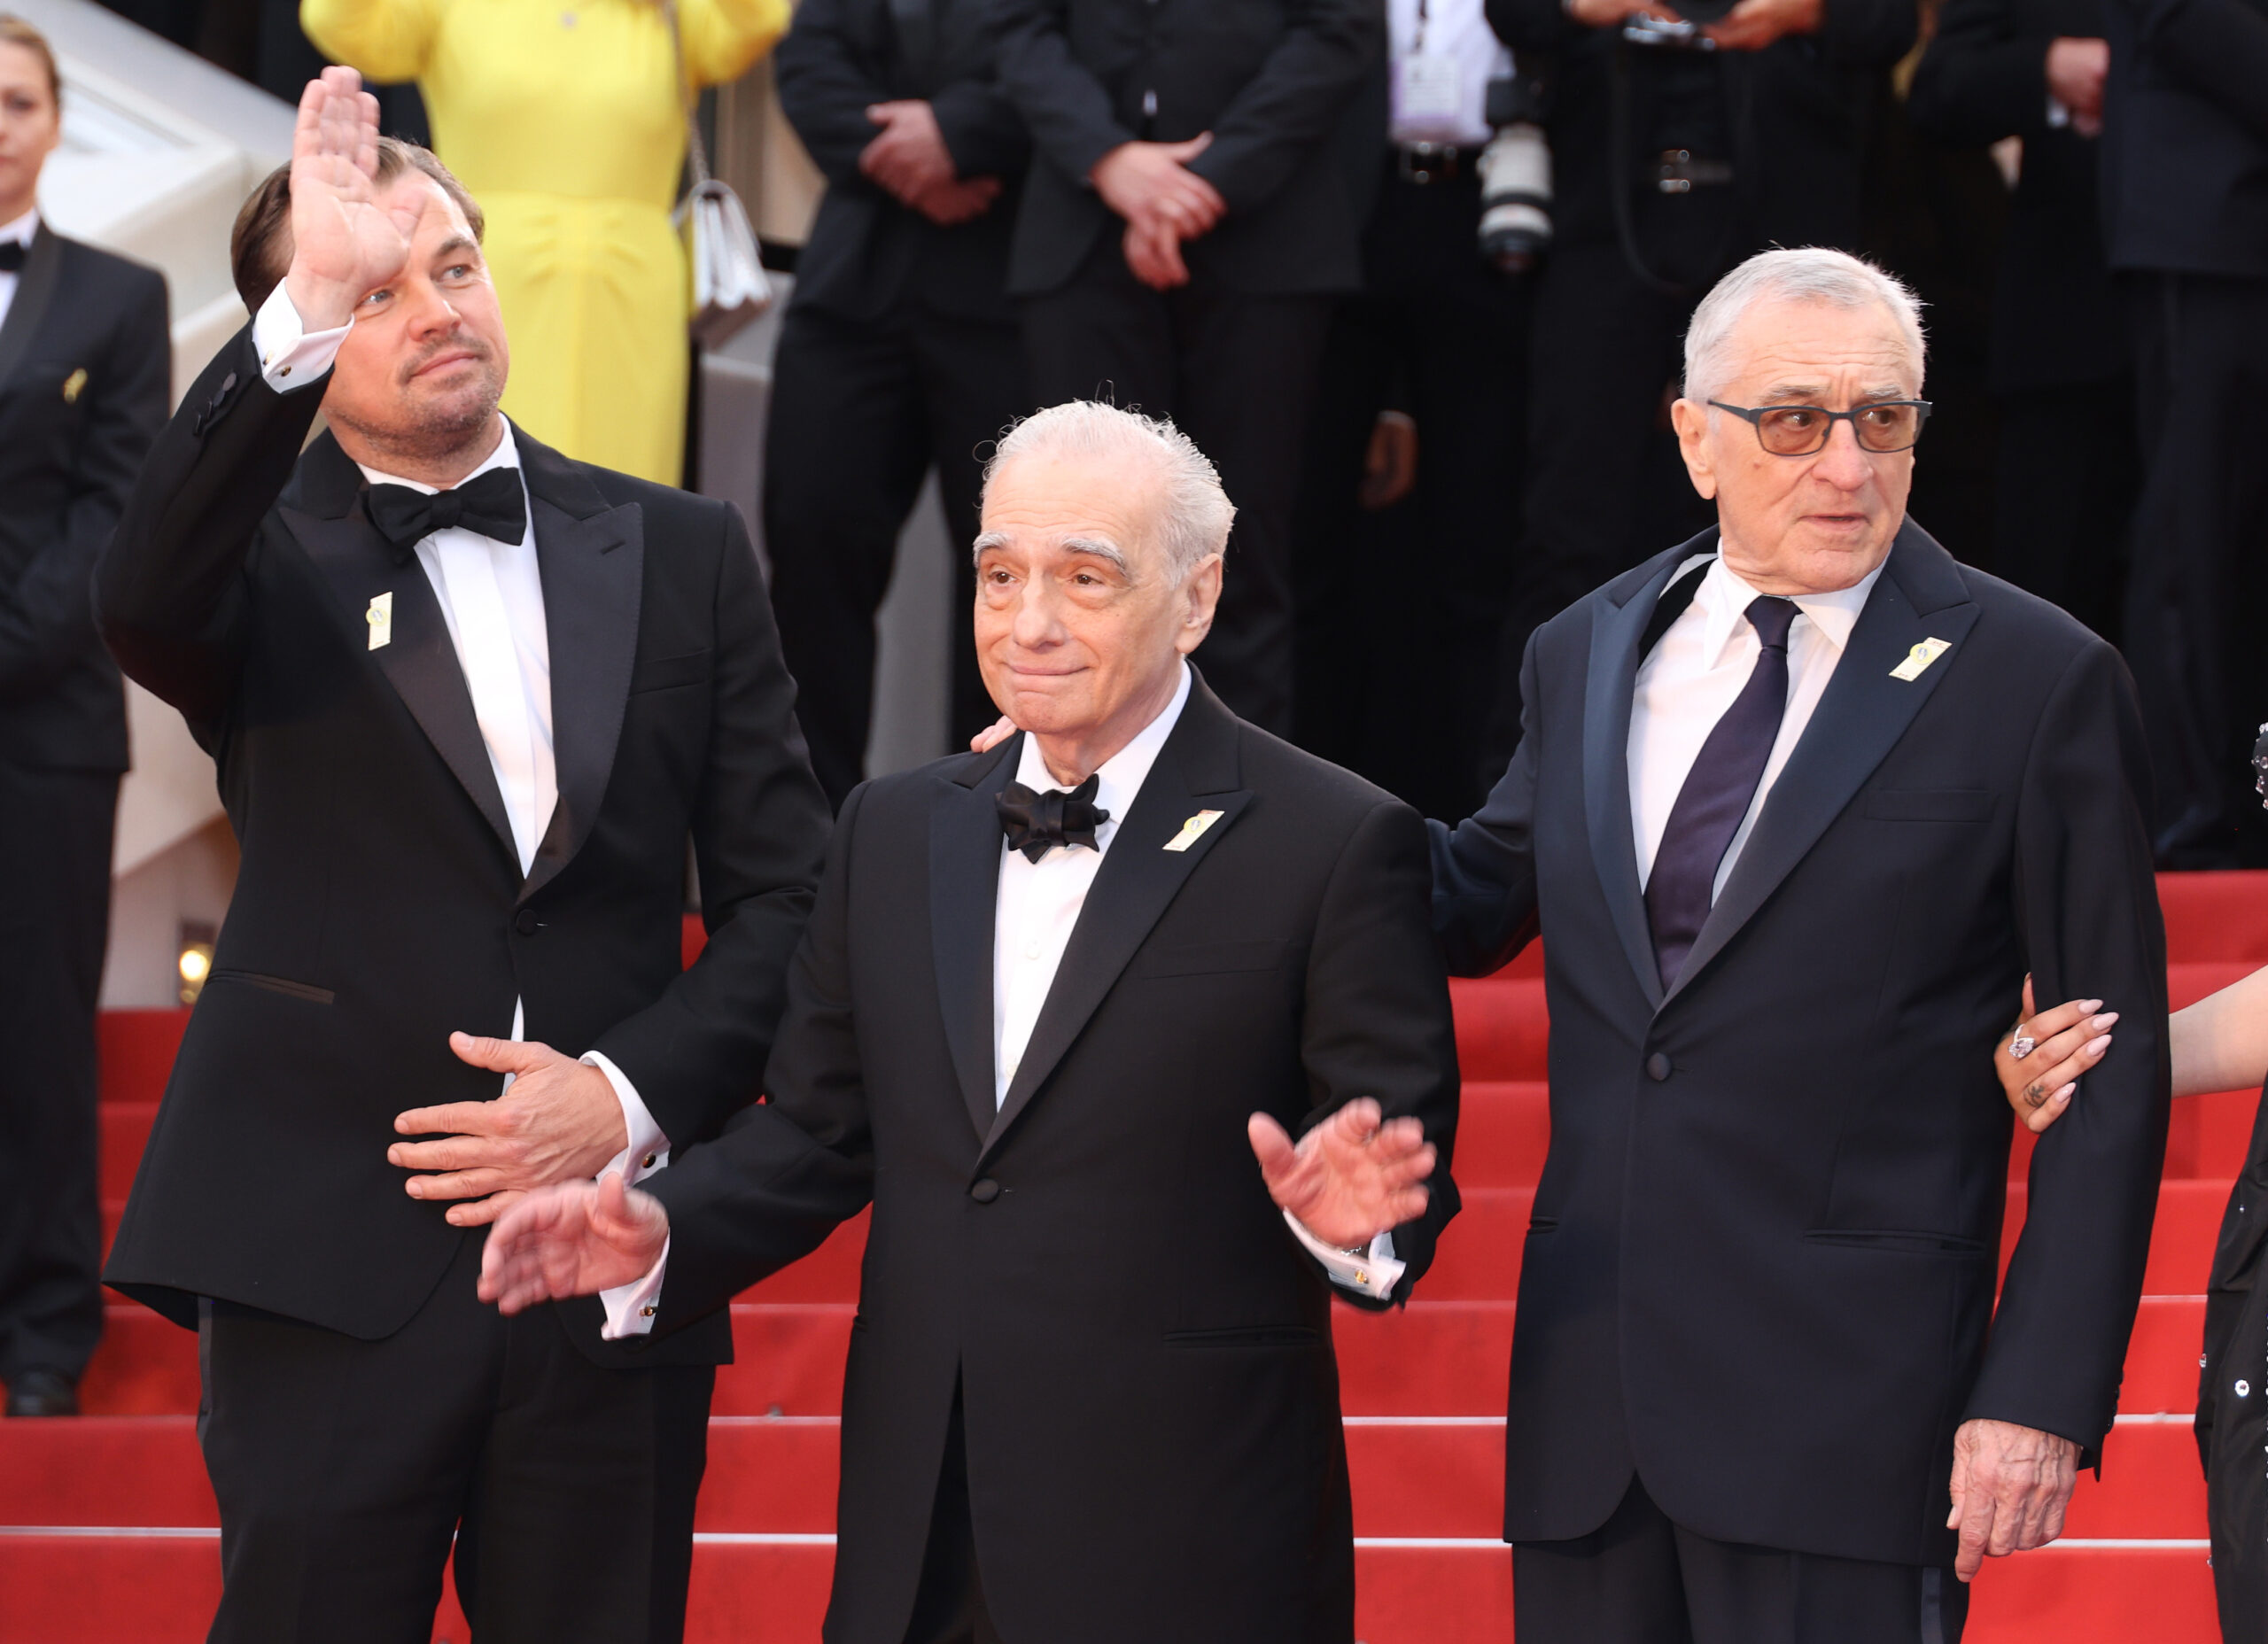 Zuhogó esőben vártak a rajongók – sztárparádé Martin Scorsese legújabb filmjének világpremierjén Cannes-ban